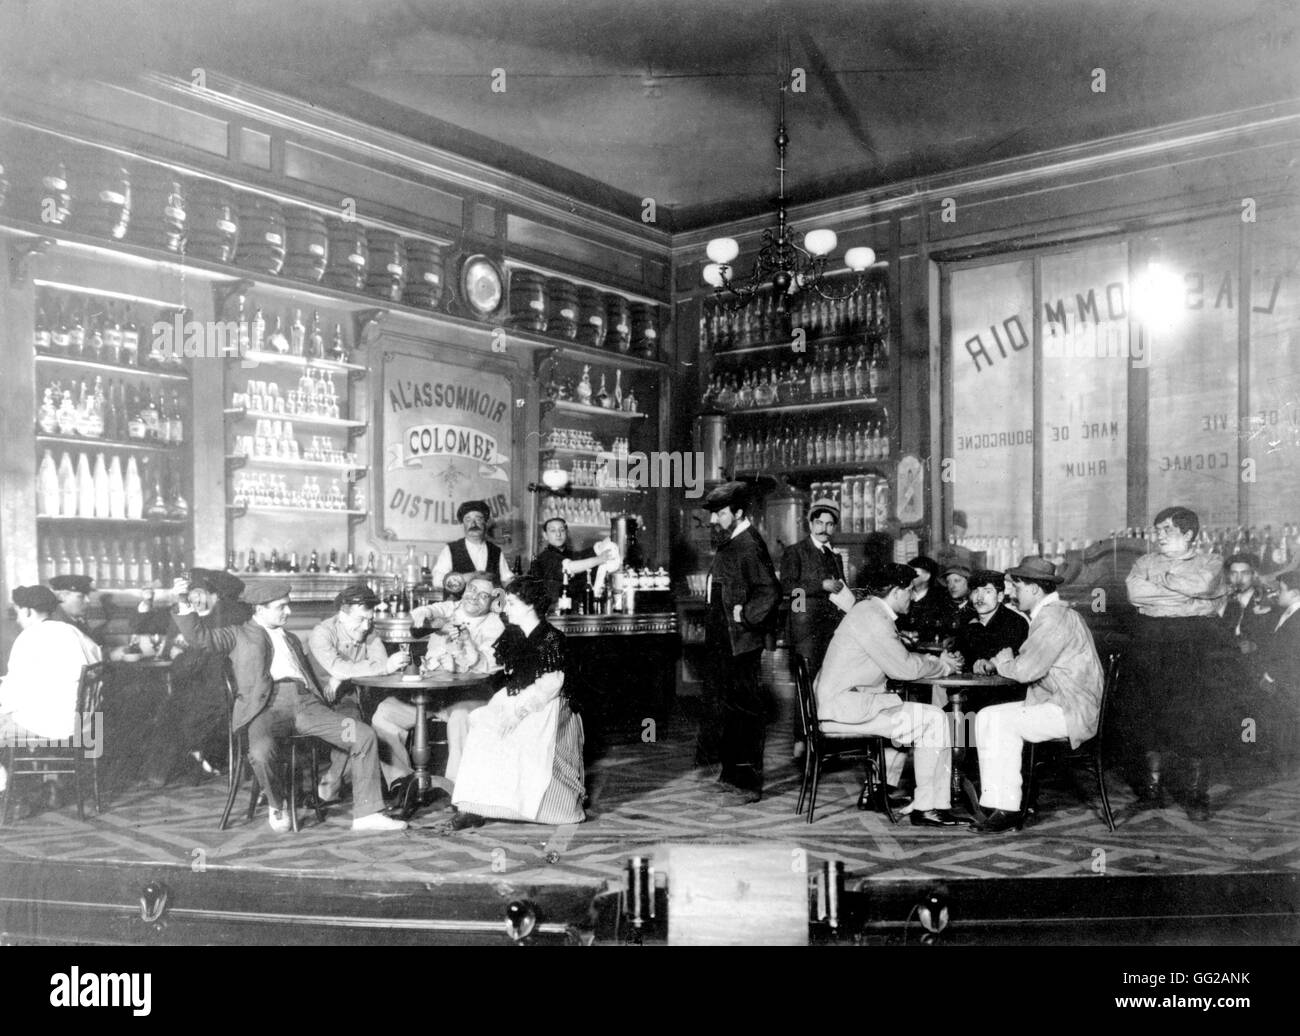 Innerhalb der französischen Café "L'Assommoir" c.1900 Frankreich Stockfoto